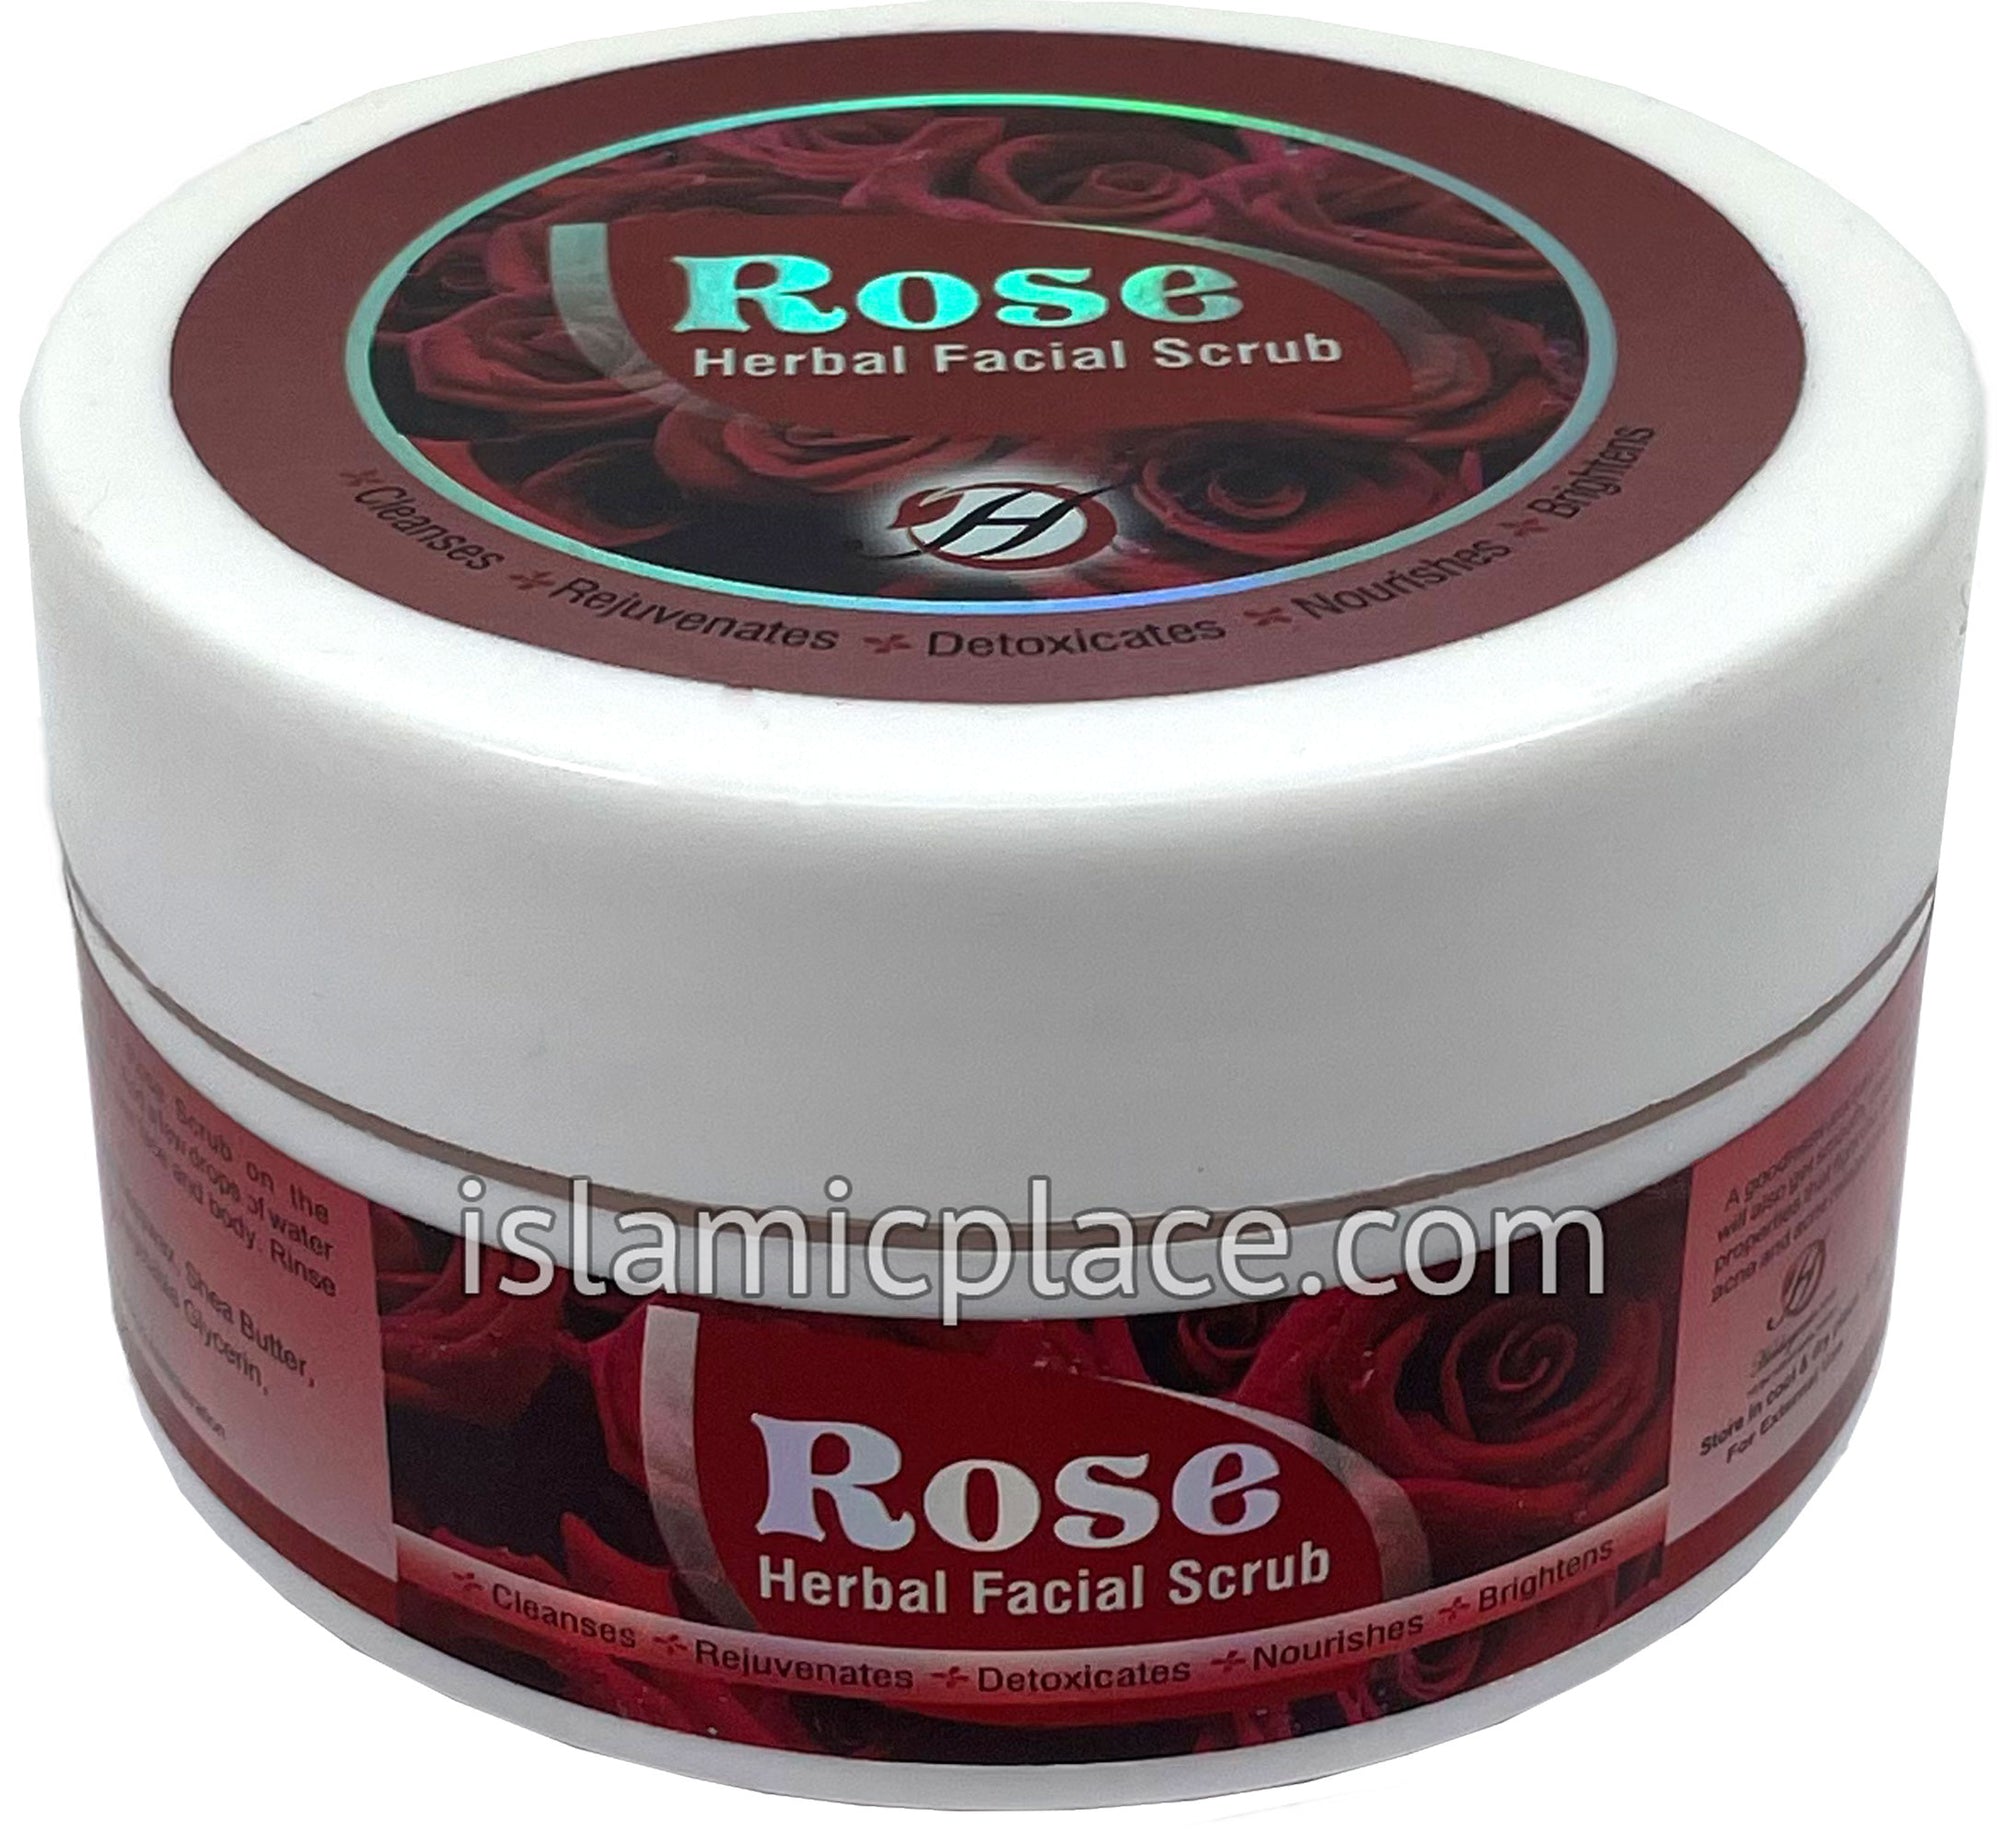 Rose Herbal Facial Scrub